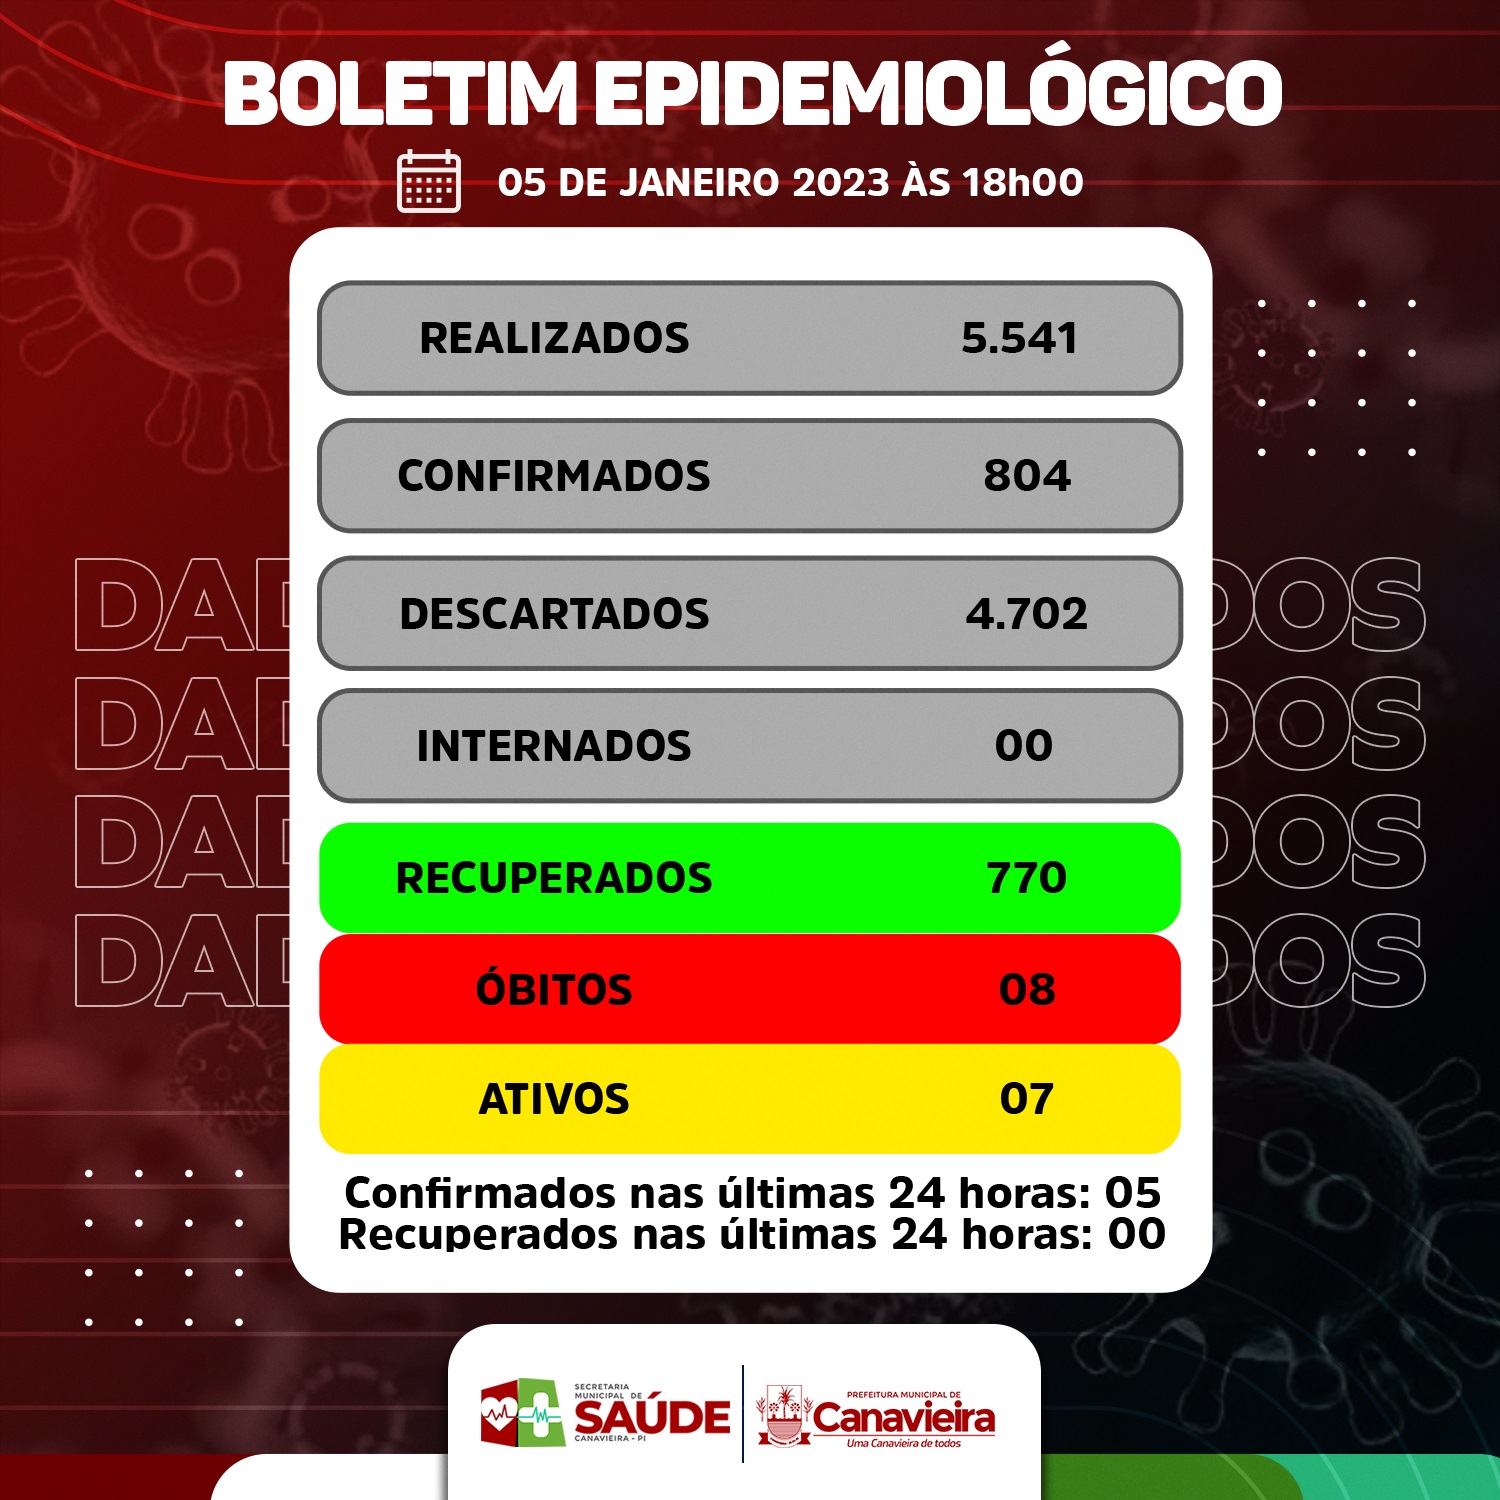  BOLETIM EPIDEMIOLÓGICO - COVID-19 - CANAVIEIRA 05.01.2023